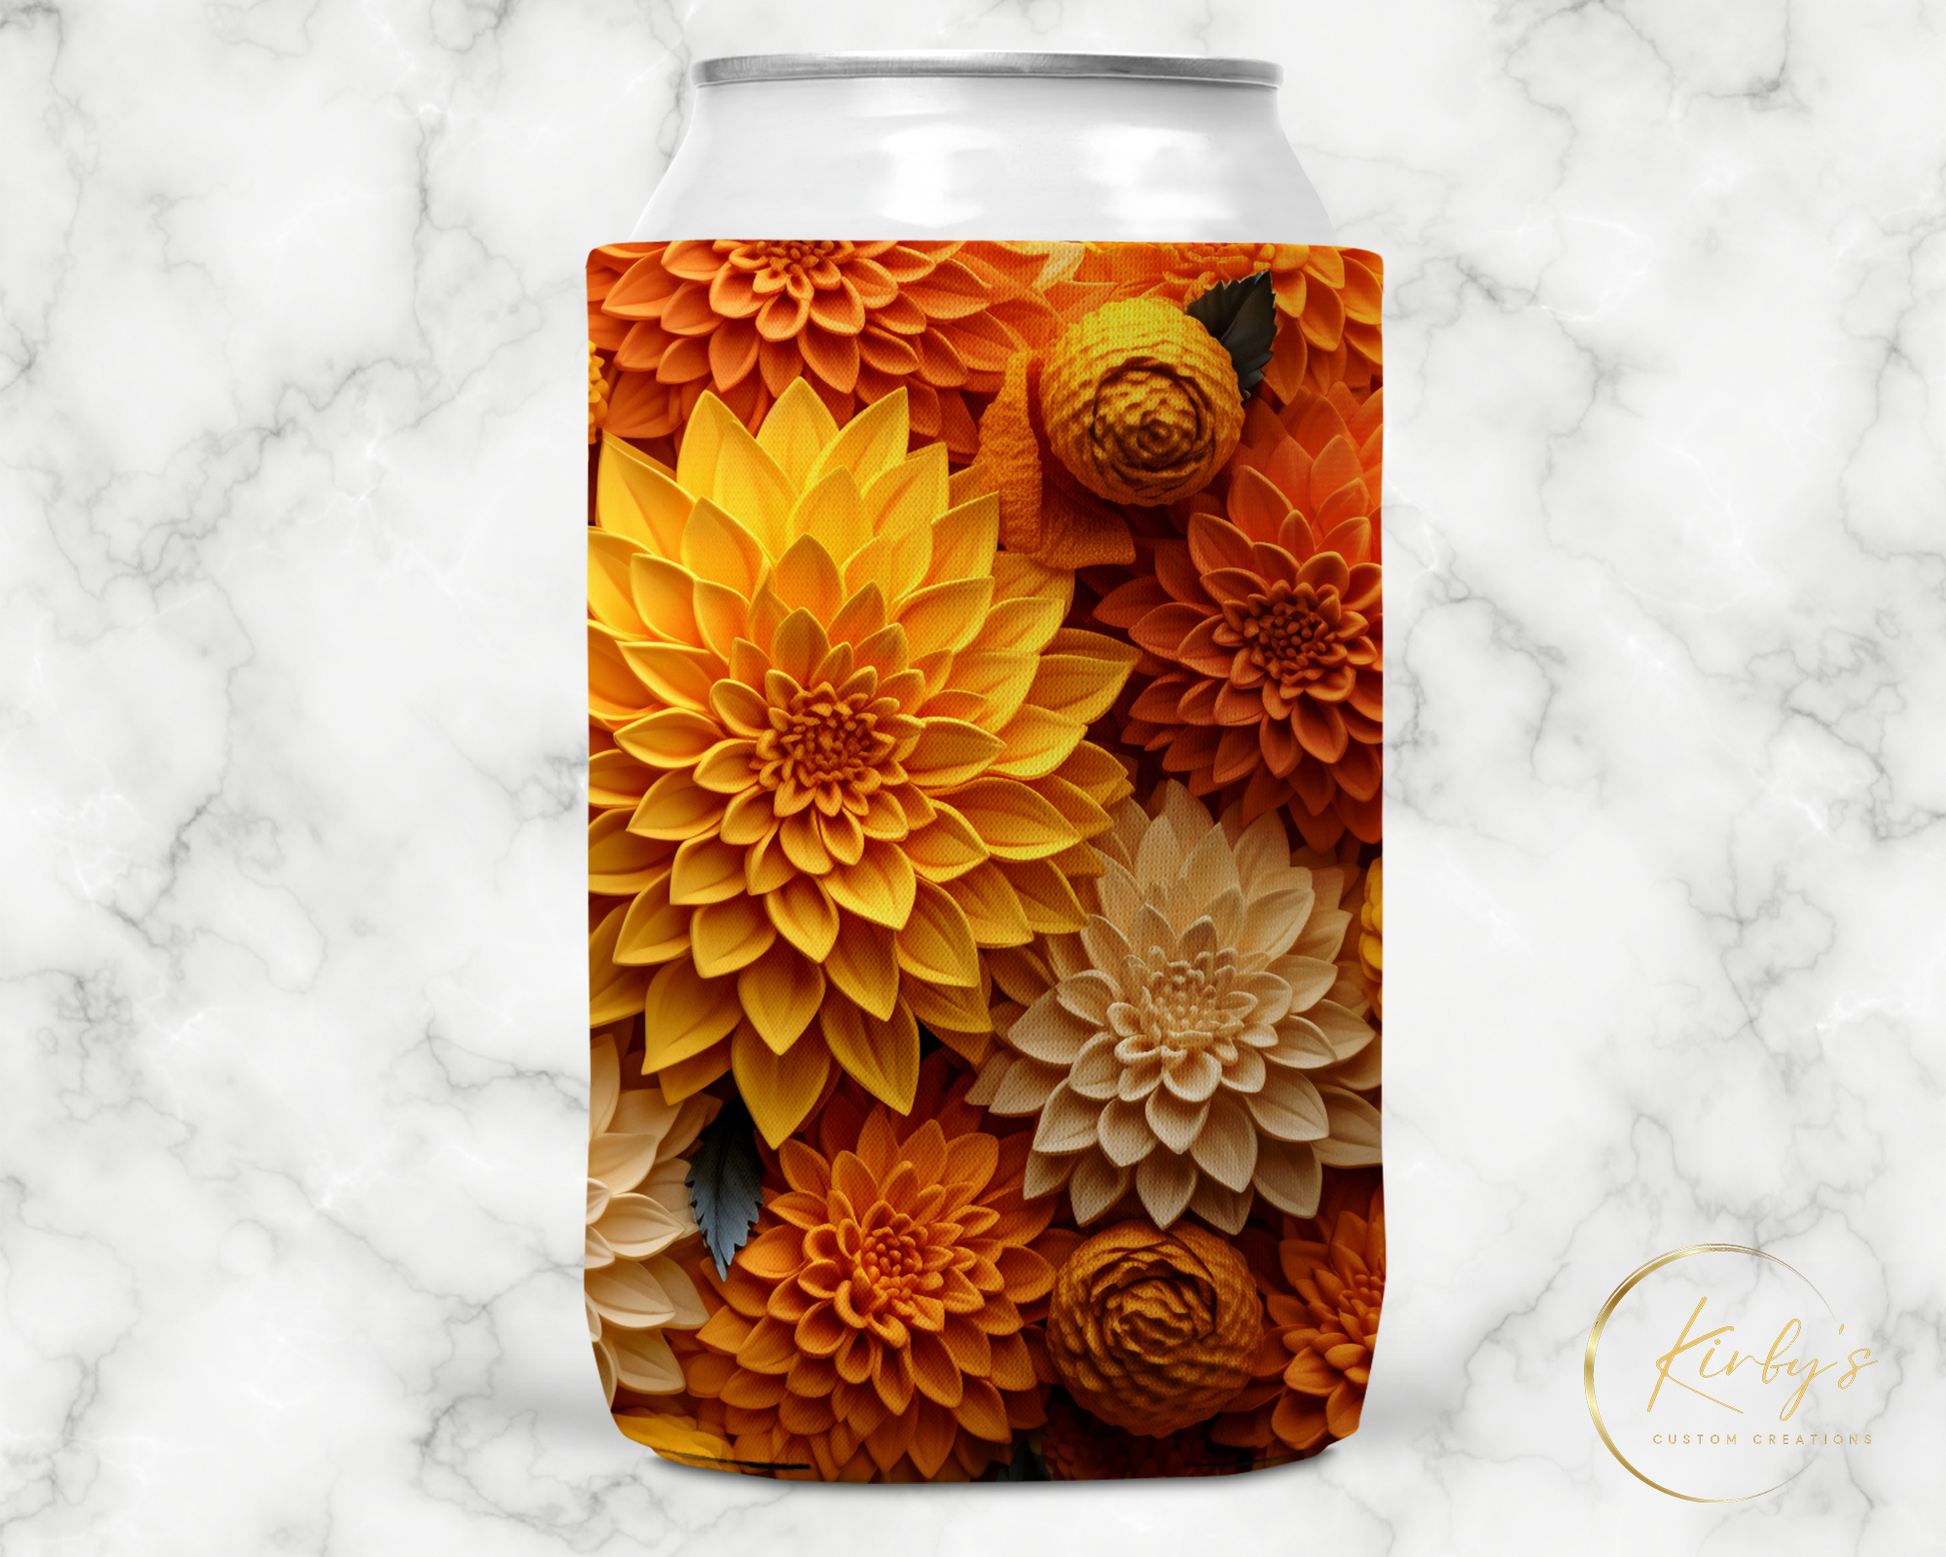 3D Floral Can Holder Orange Sunflowers Standard Soft Koozie